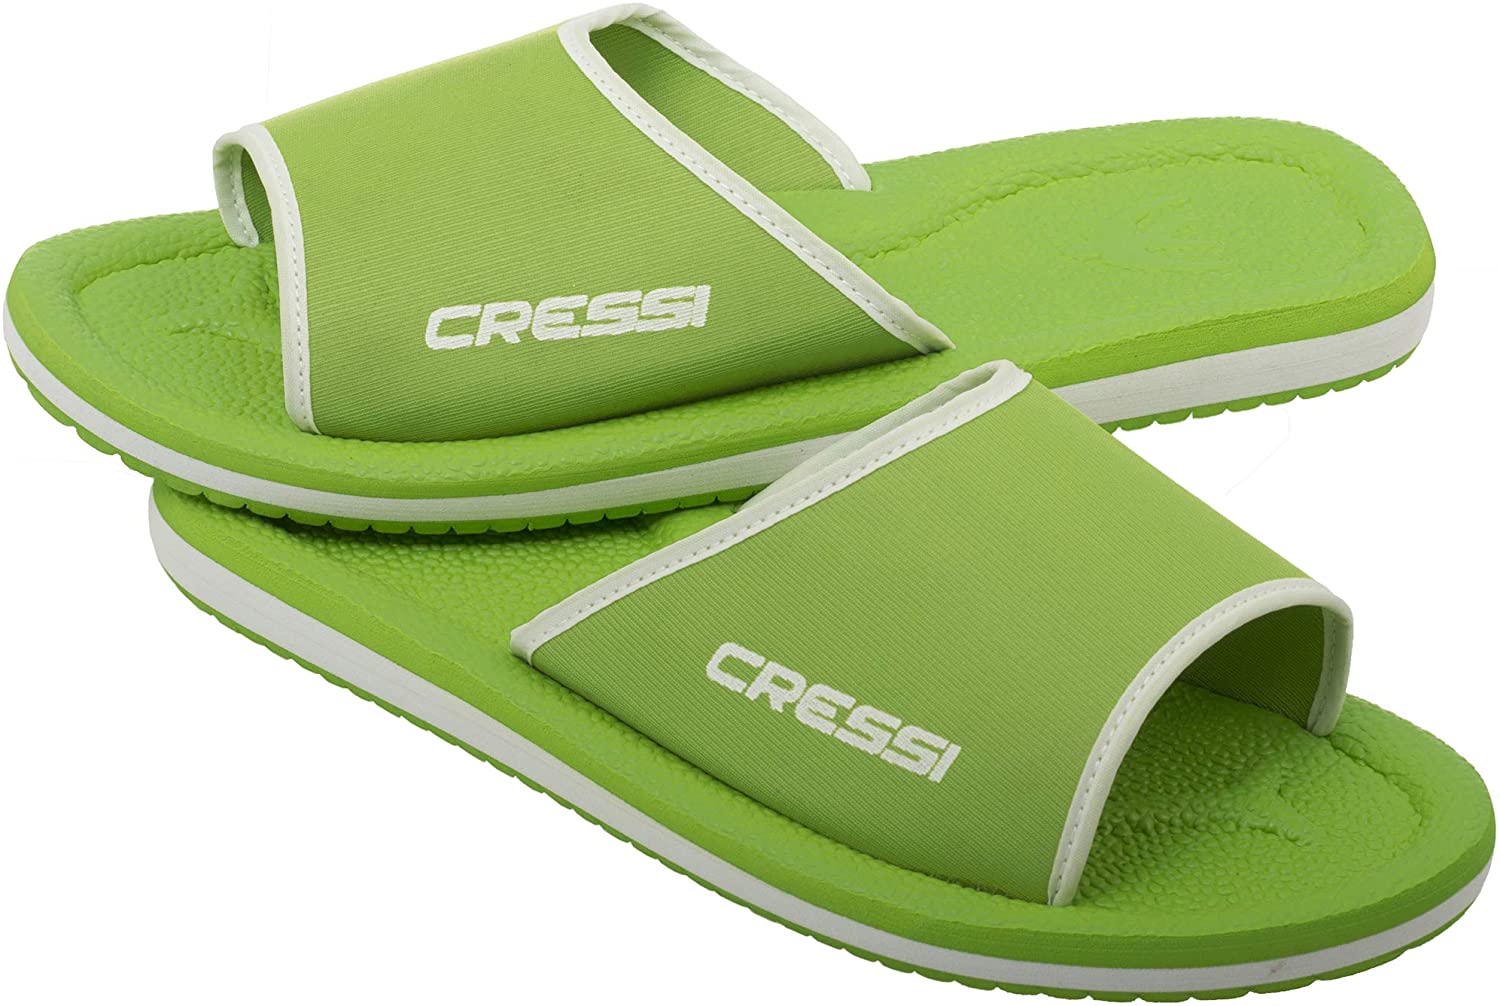 Unisex Beach Sandals Cressi Lipari